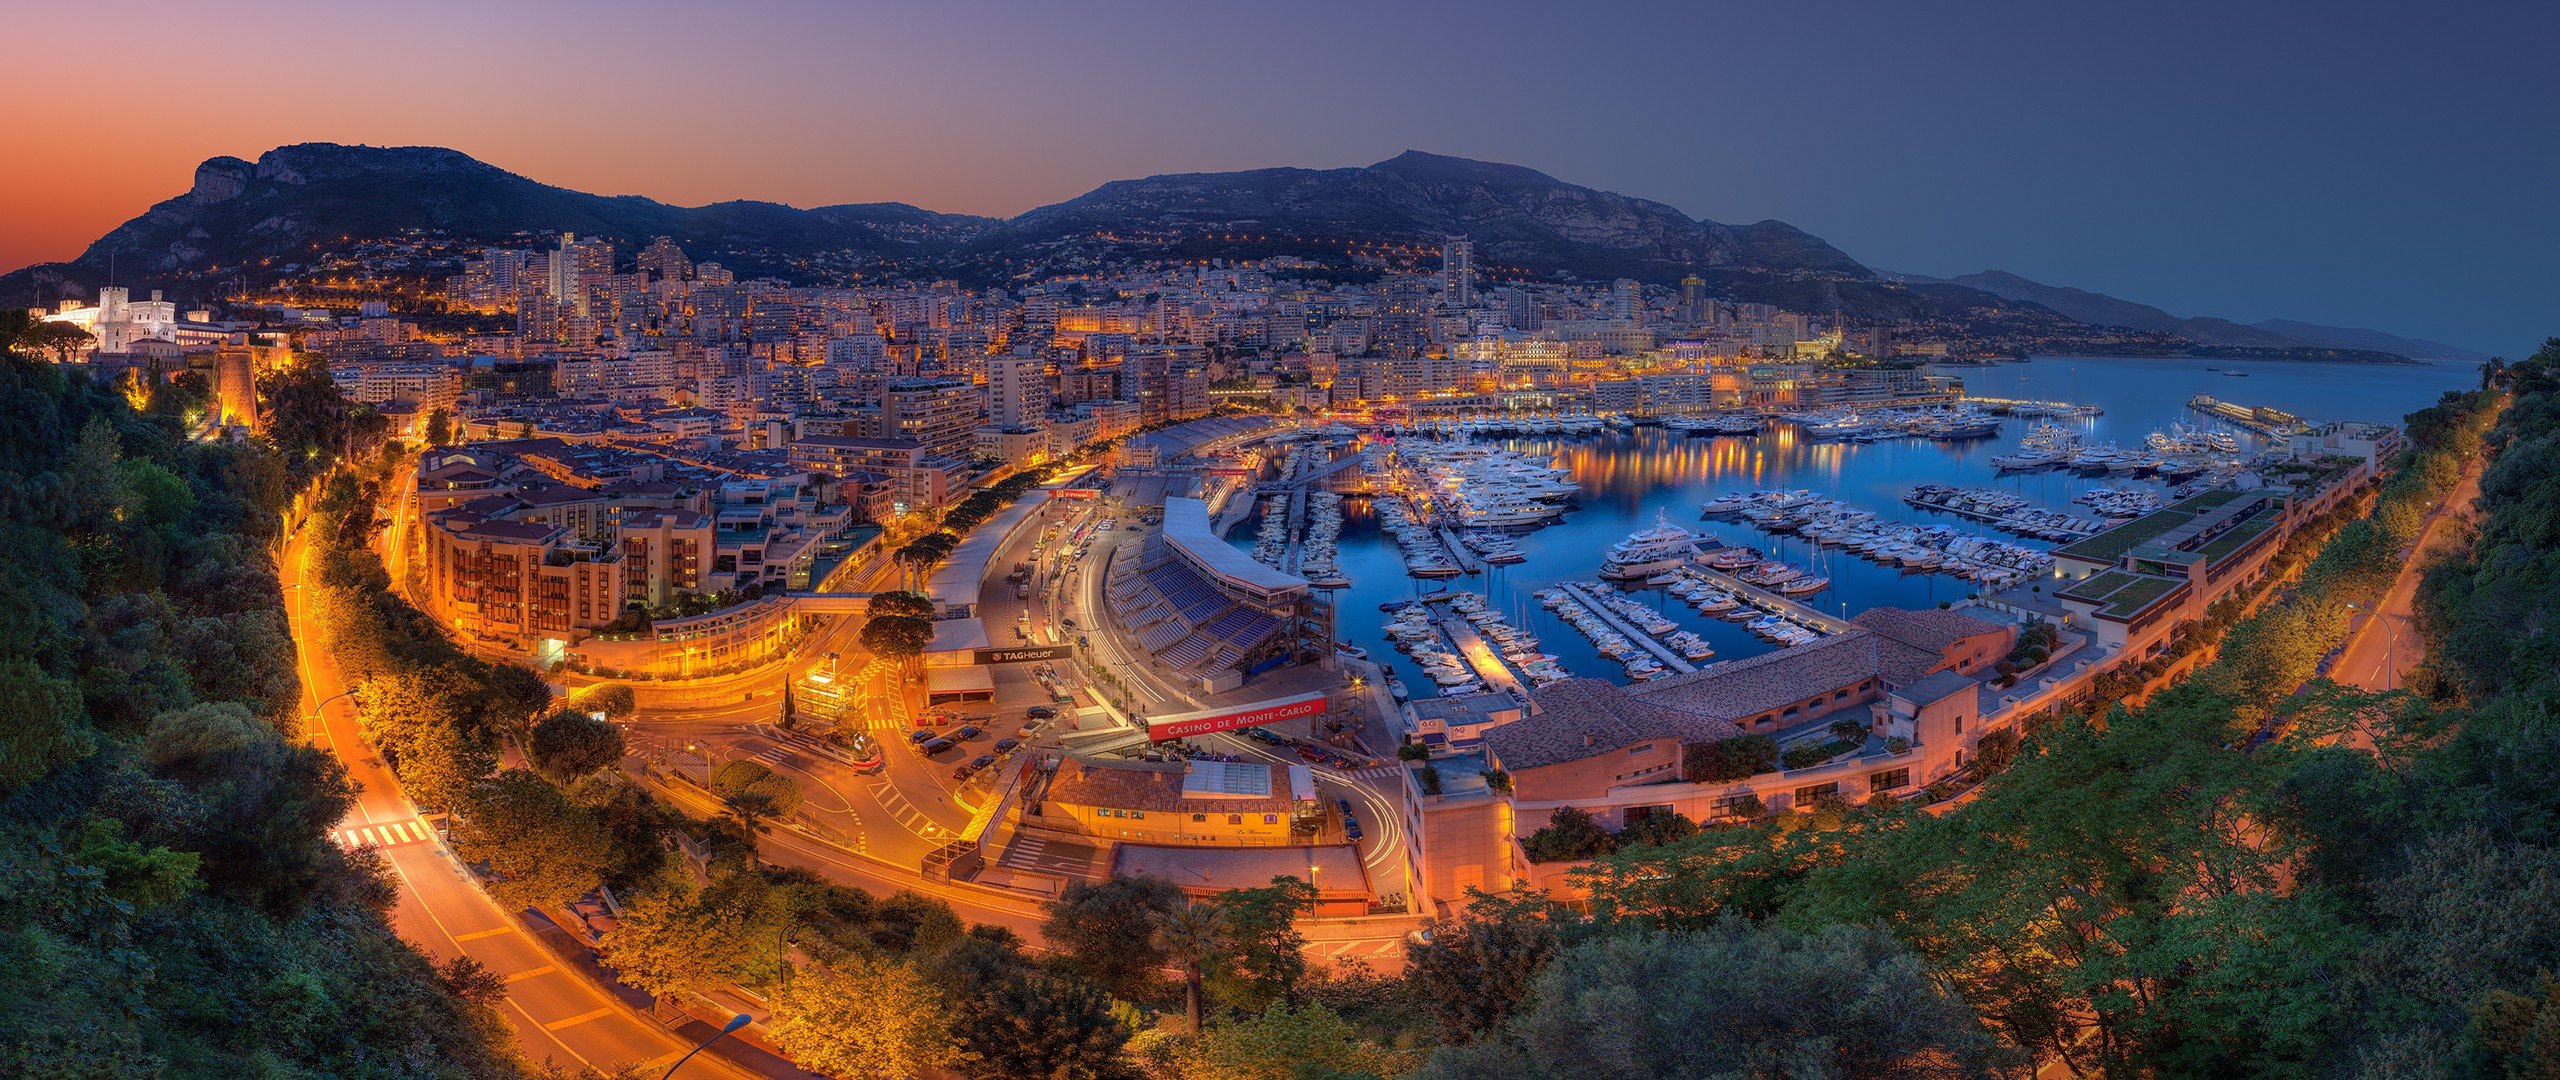 General 2560x1080 landscape Monaco ports cityscape city dusk mountains lights sky